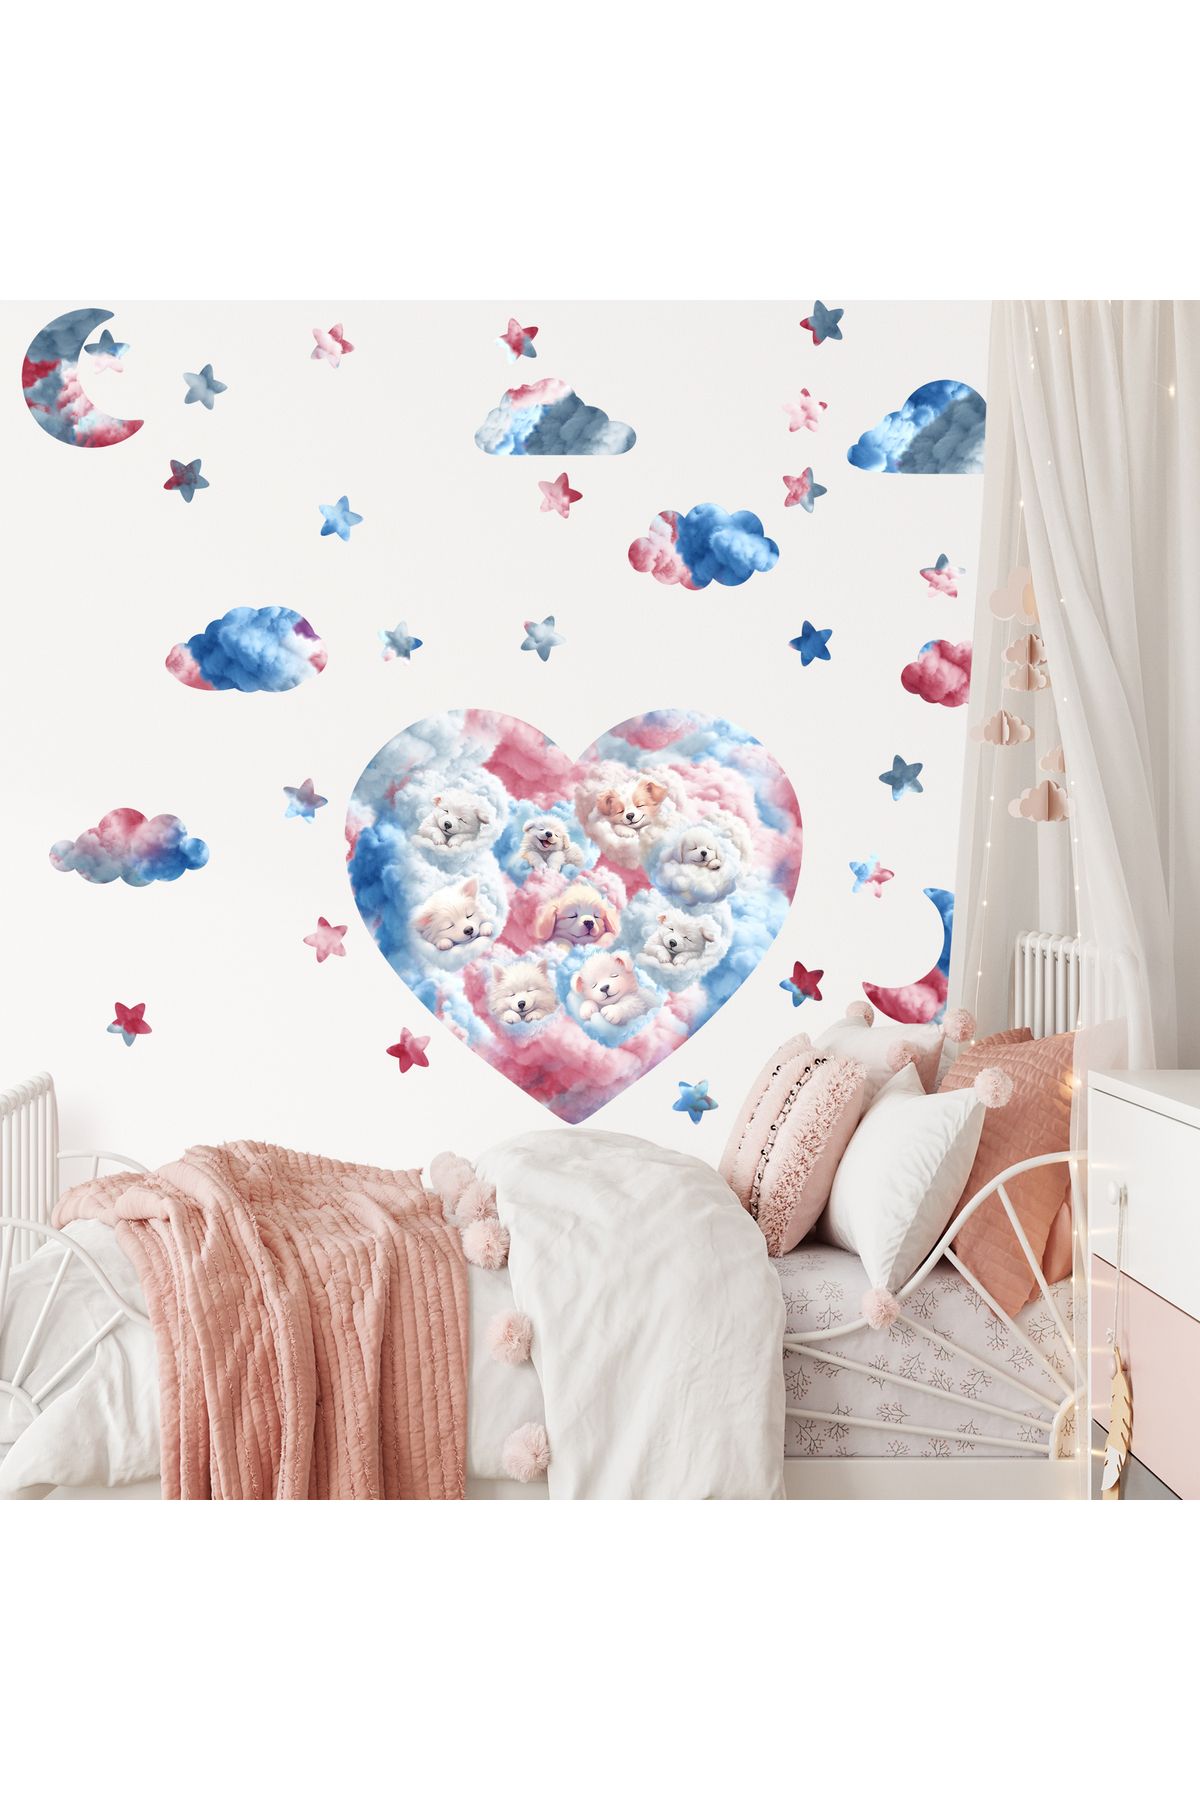 dreamwall Çocuk Odası Sevimli Köpekler,Kalpler,Yıldızlar Desenli Set (33 parça) Kumaş Duvar Sticker